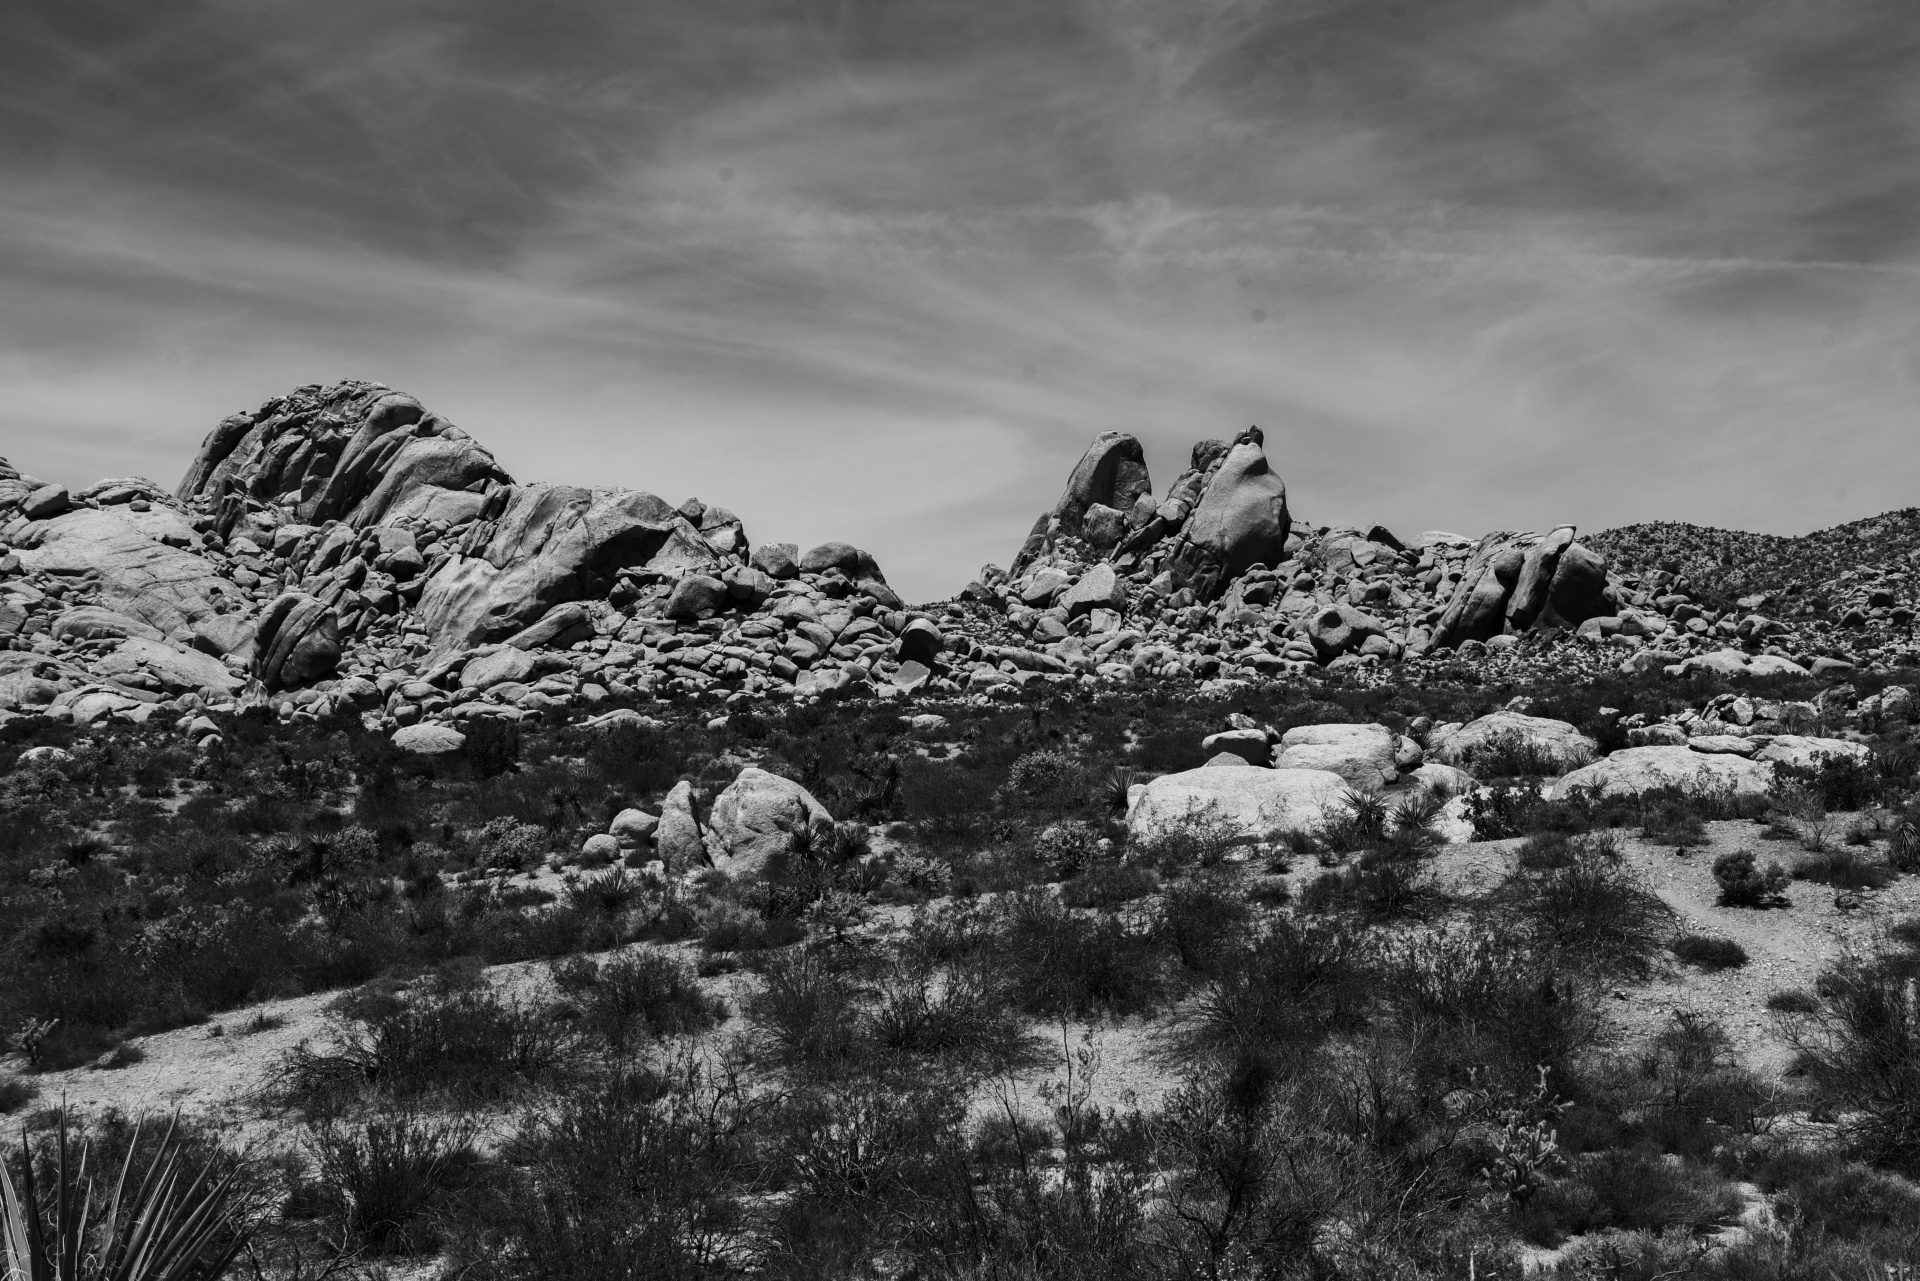 Desert Rock formaties